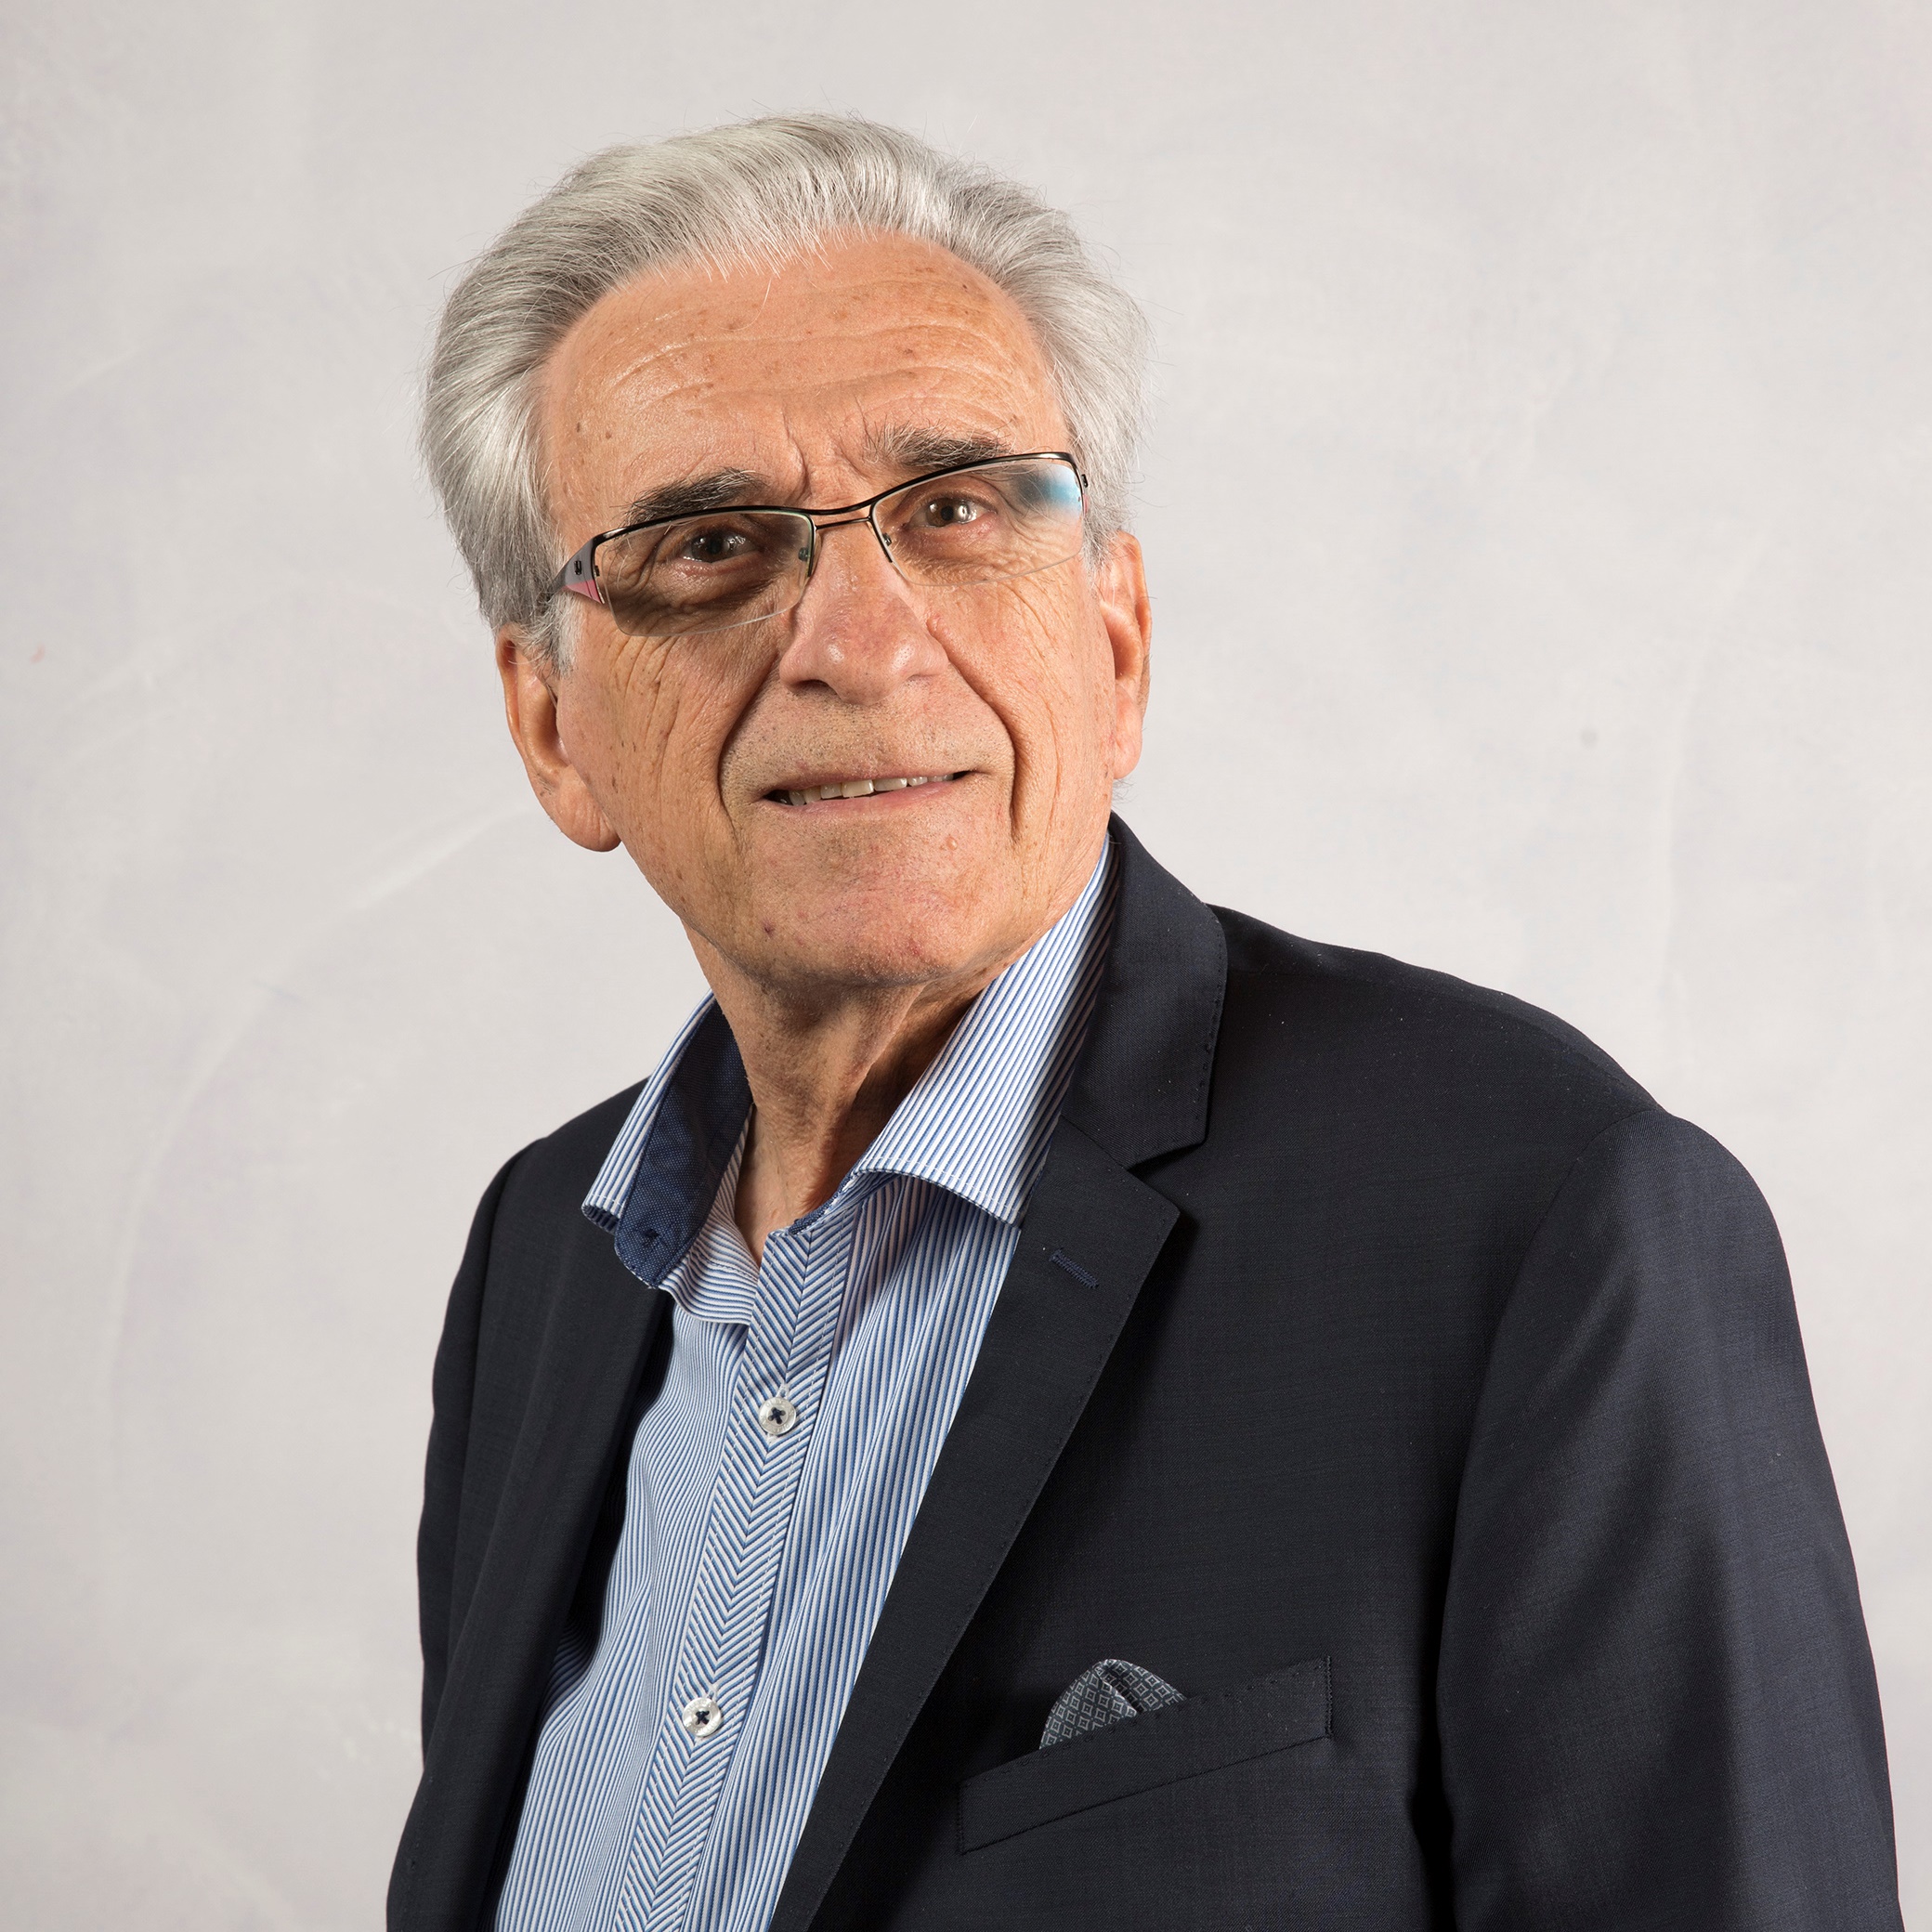 Portrait de Antonin MALROUX - auteur présent au Salon du Livre de Royat-Chamalières 2019